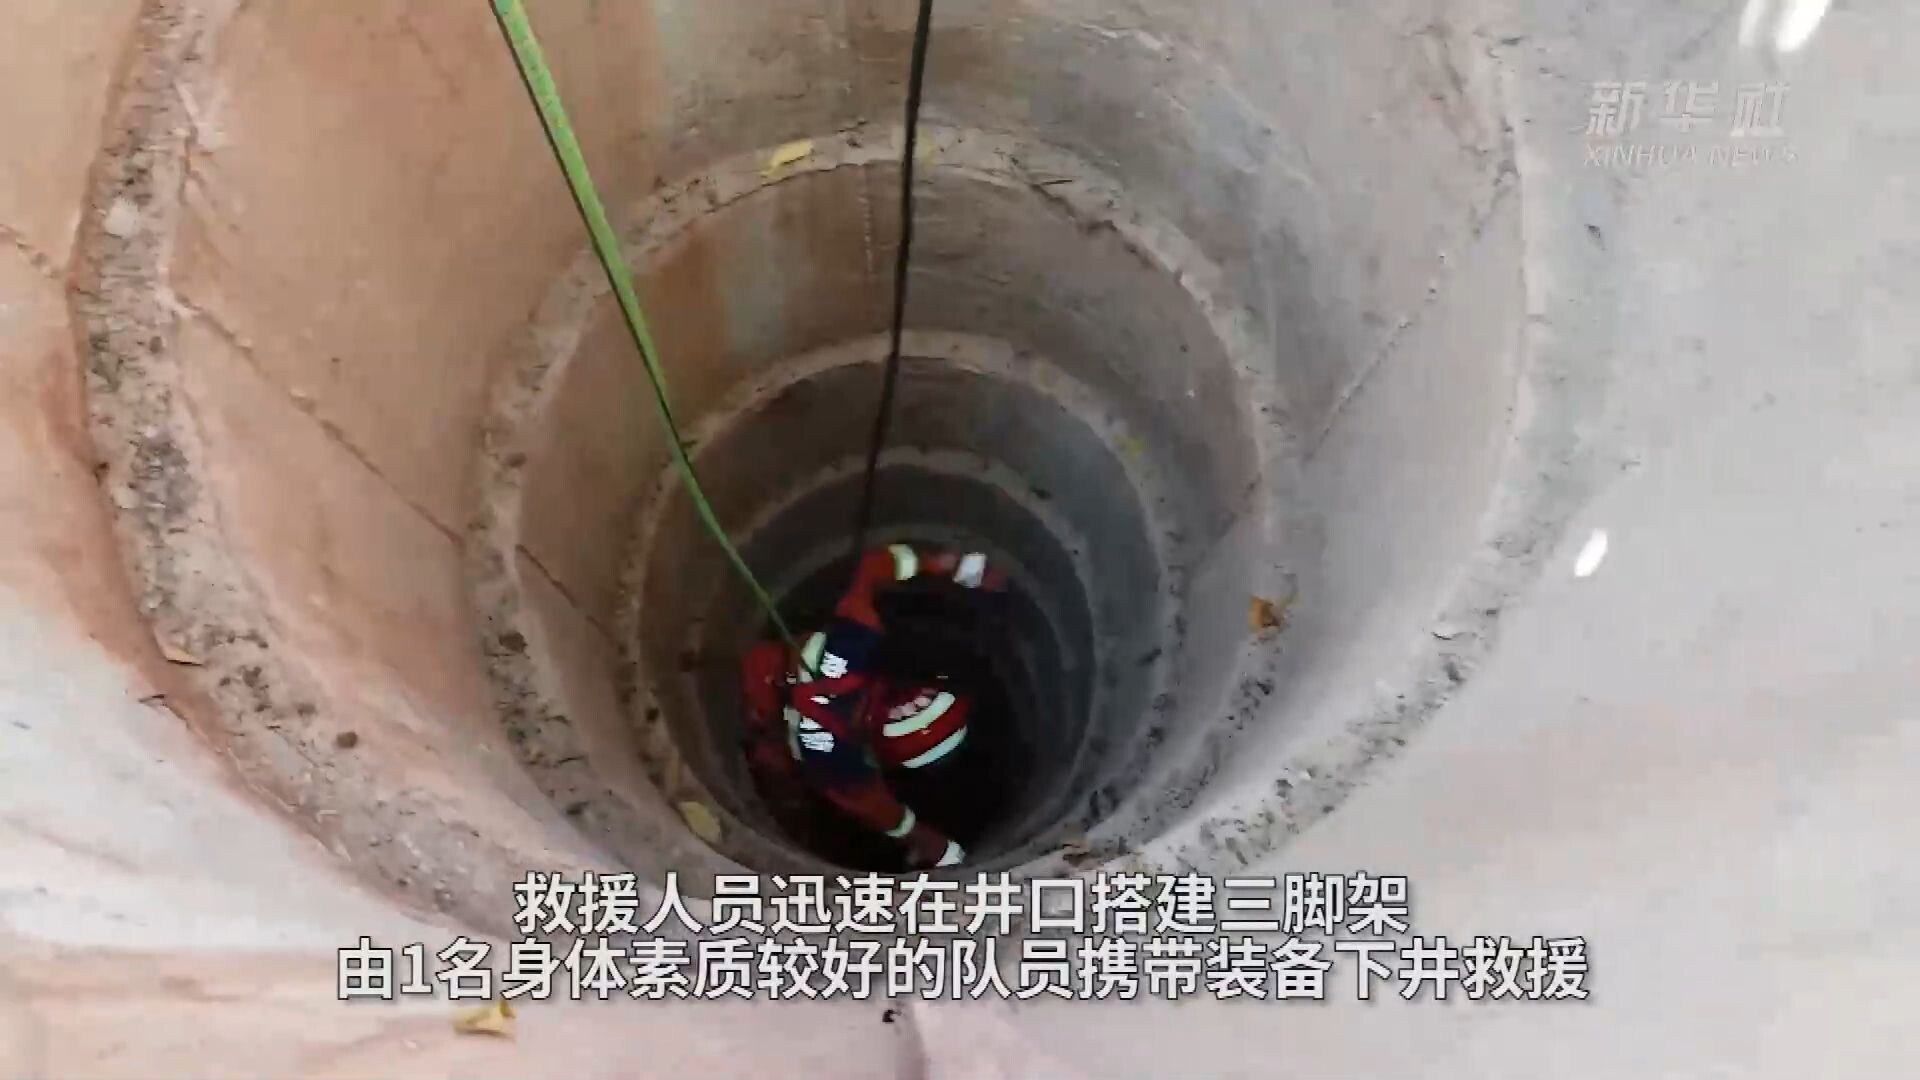 กู้ภัยช่วย 3 ชีวิตติด 'บ่อน้ำลึก 19 เมตร' ในยูนนาน